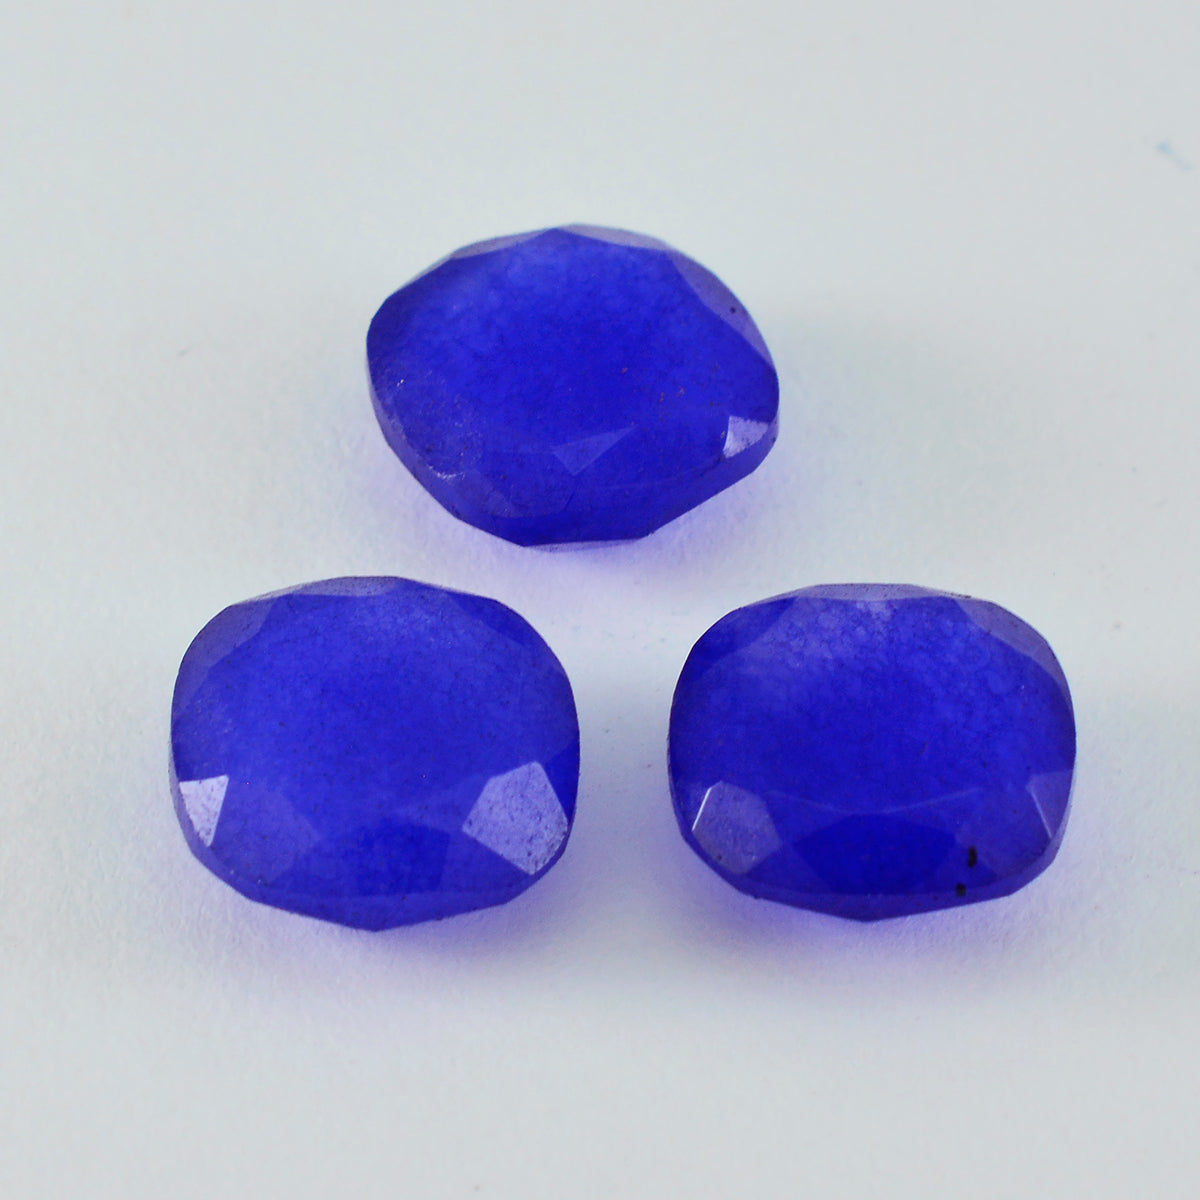 riyogems 1шт настоящая синяя яшма граненая 11x11 мм в форме подушки качество A1 драгоценный камень